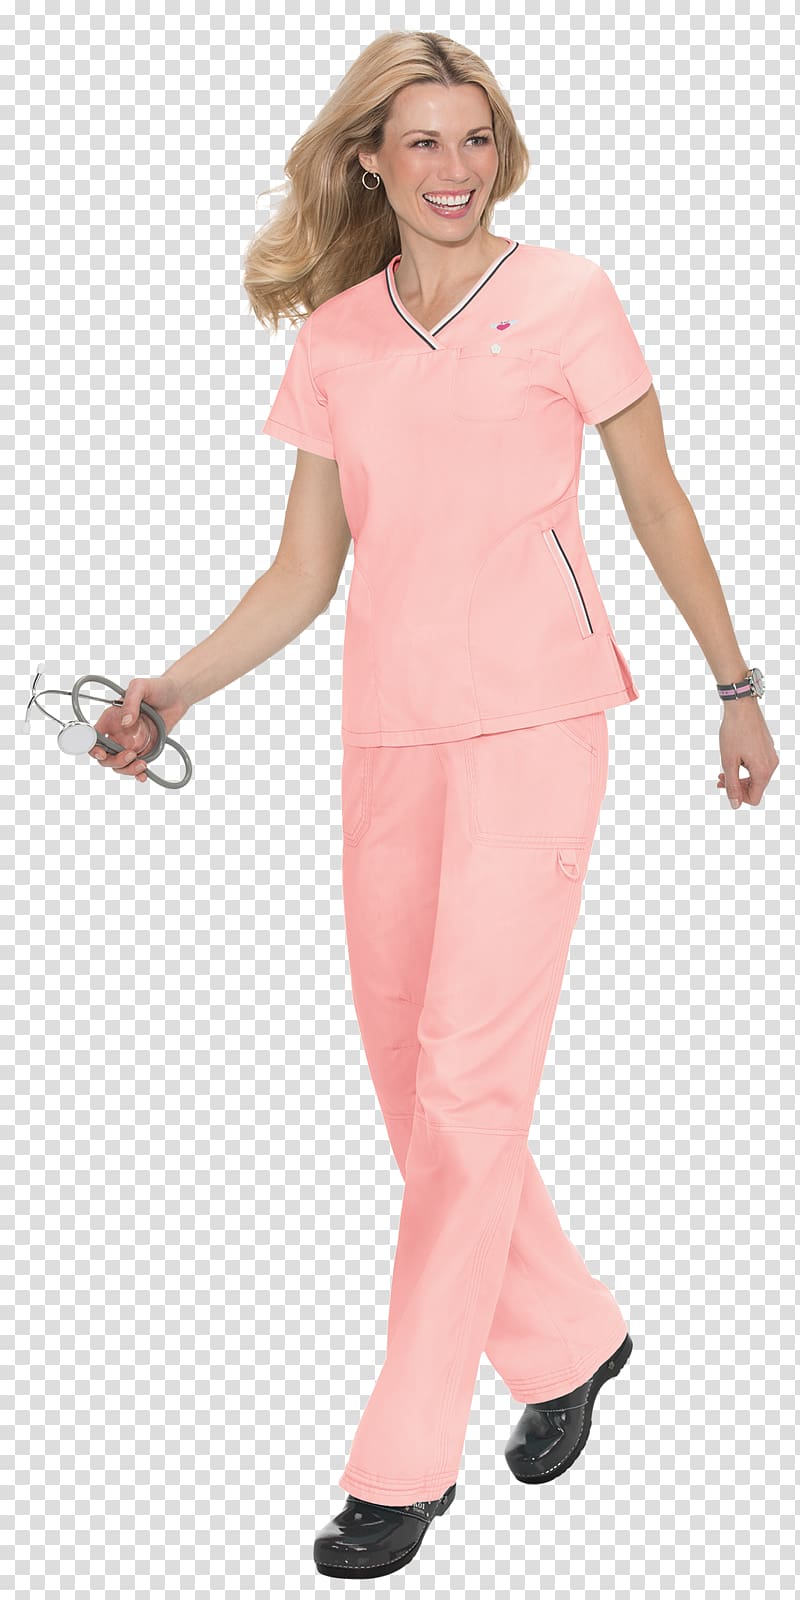 Scrubs Uniform Clothing Nursing Lab Coats, koi uniforms transparent background PNG clipart